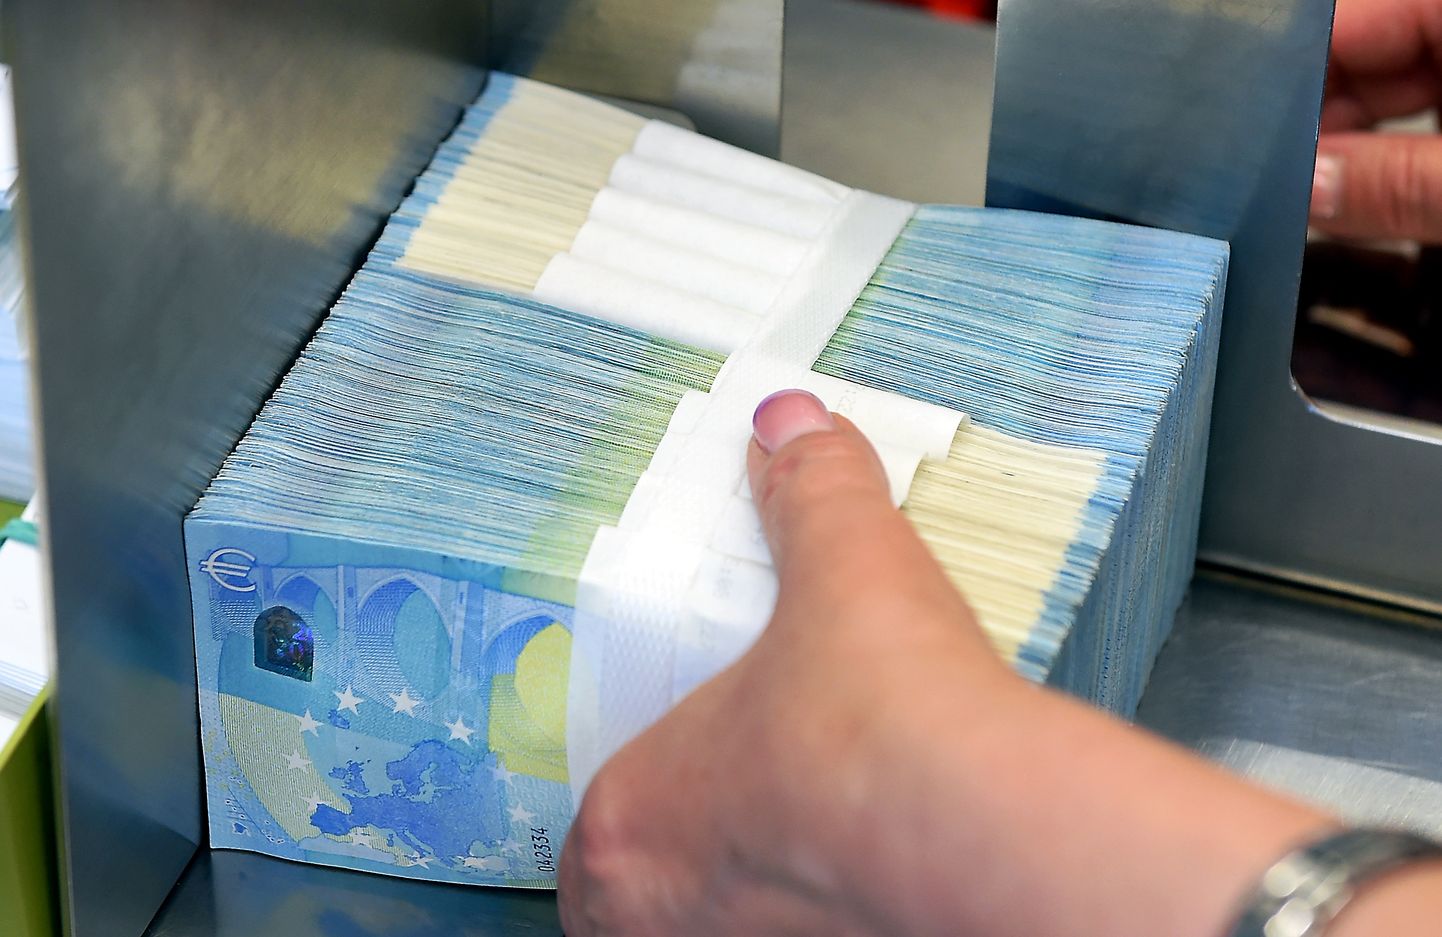 Kvalitatīvās banknotes, kuras pēc pārbaudes tiek novirzītas uz iesaiņošanu, lai varētu tās atkal izsniegt klientiem – komercbankām.